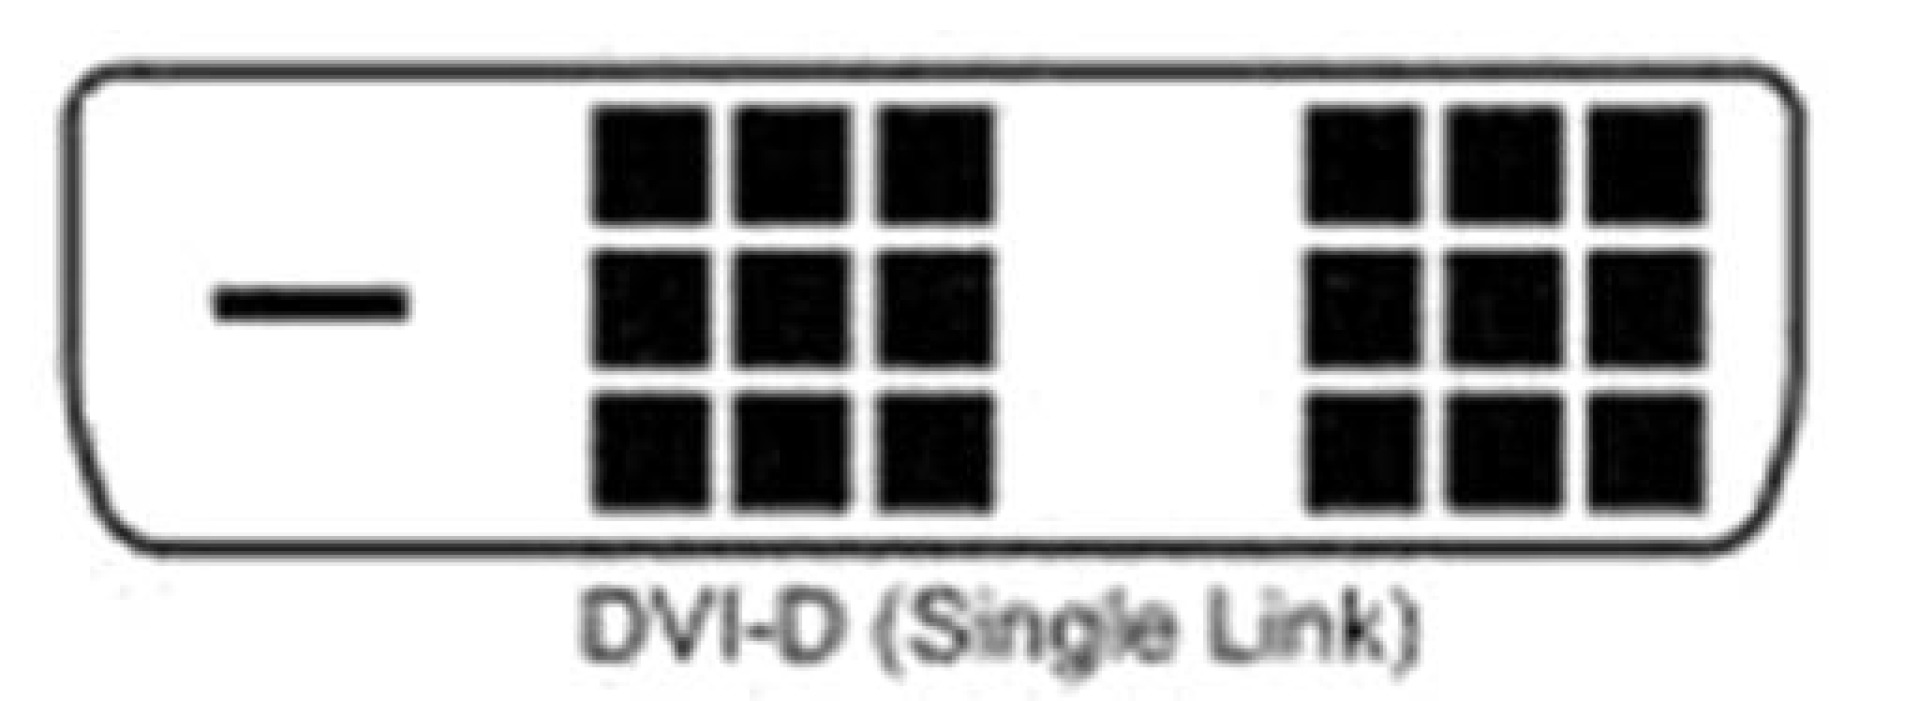 DVI-D Single-Link Anschlusskabel Stecker/Stecker, schwarz, 1,8 m